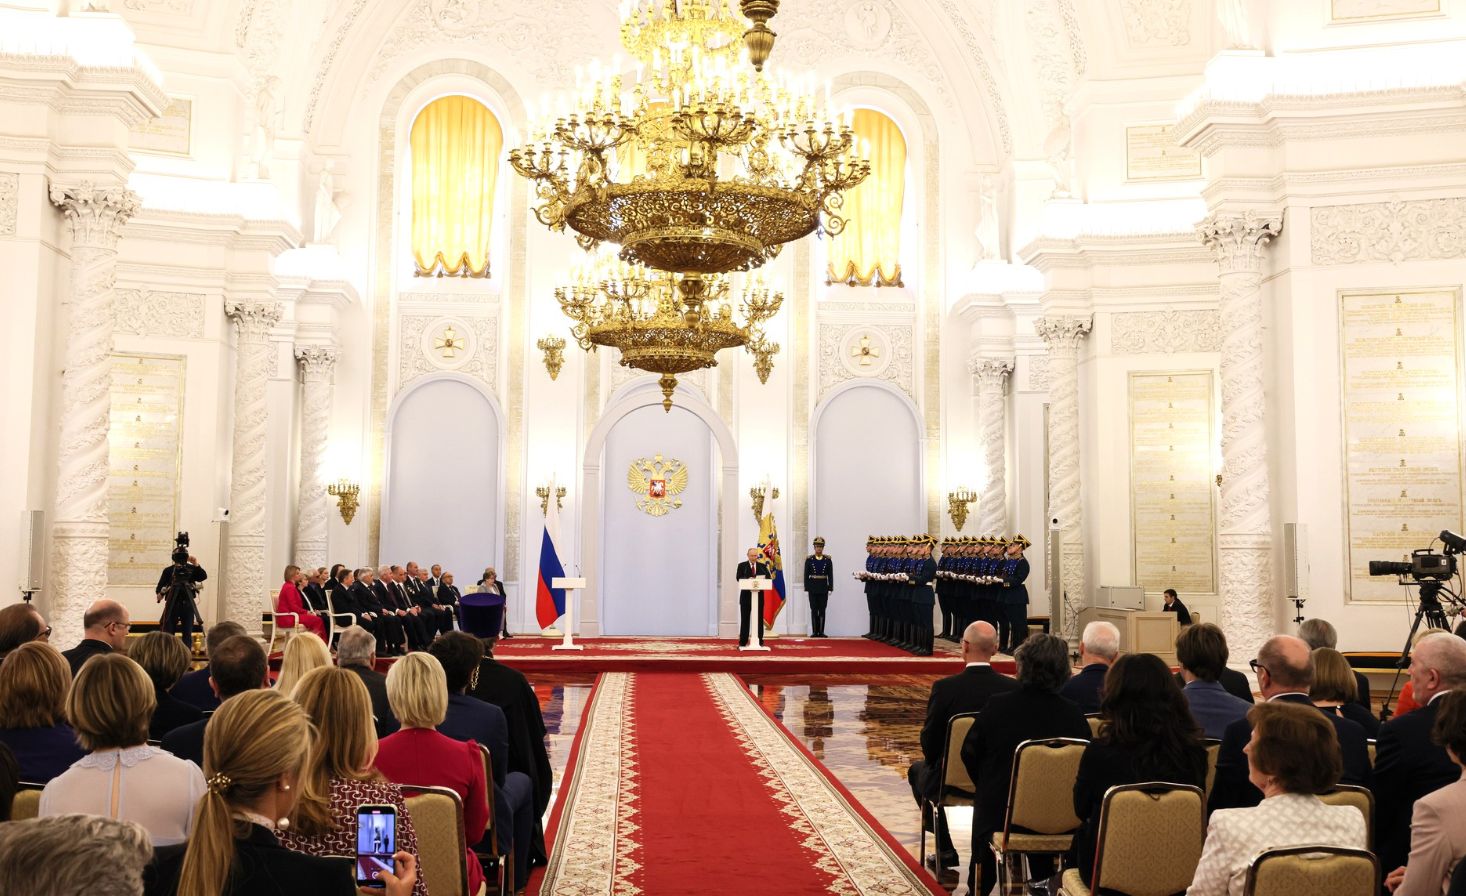 георгиевский зал большого кремлевского дворца